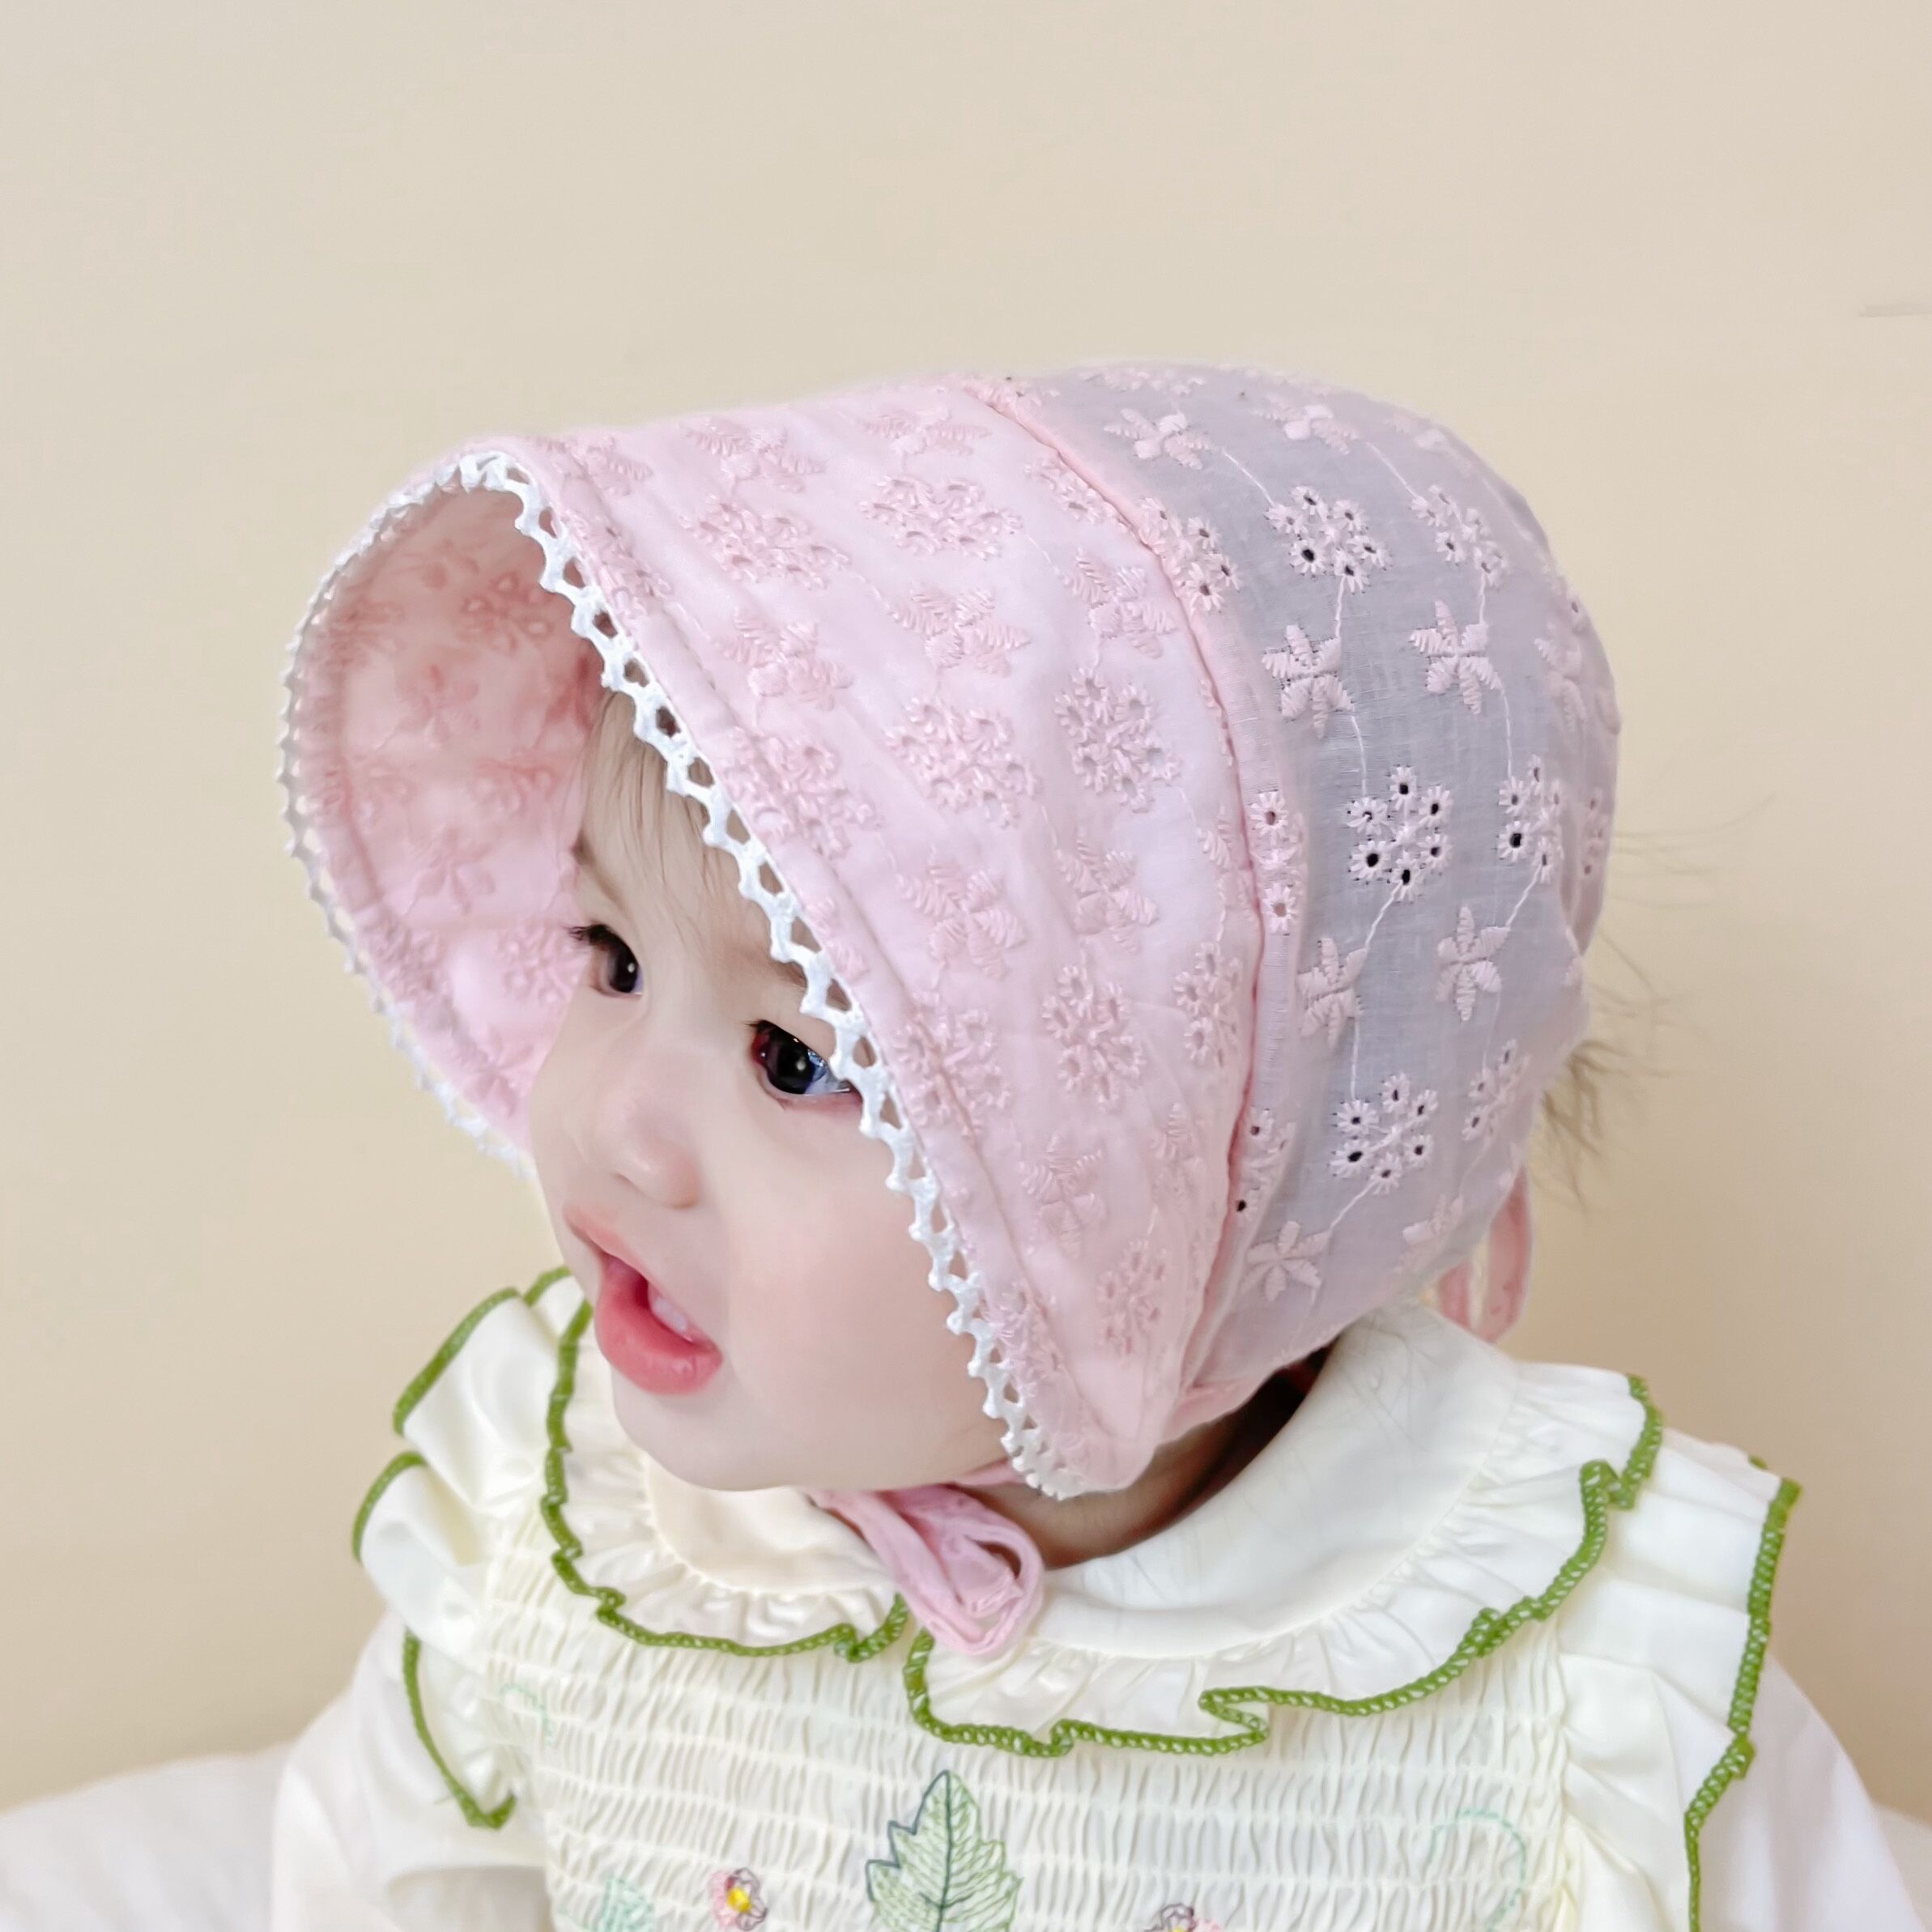 新款遮阳帽 宝宝太阳帽 男女儿童凉帽 婴儿儿童盆帽/儿童帽